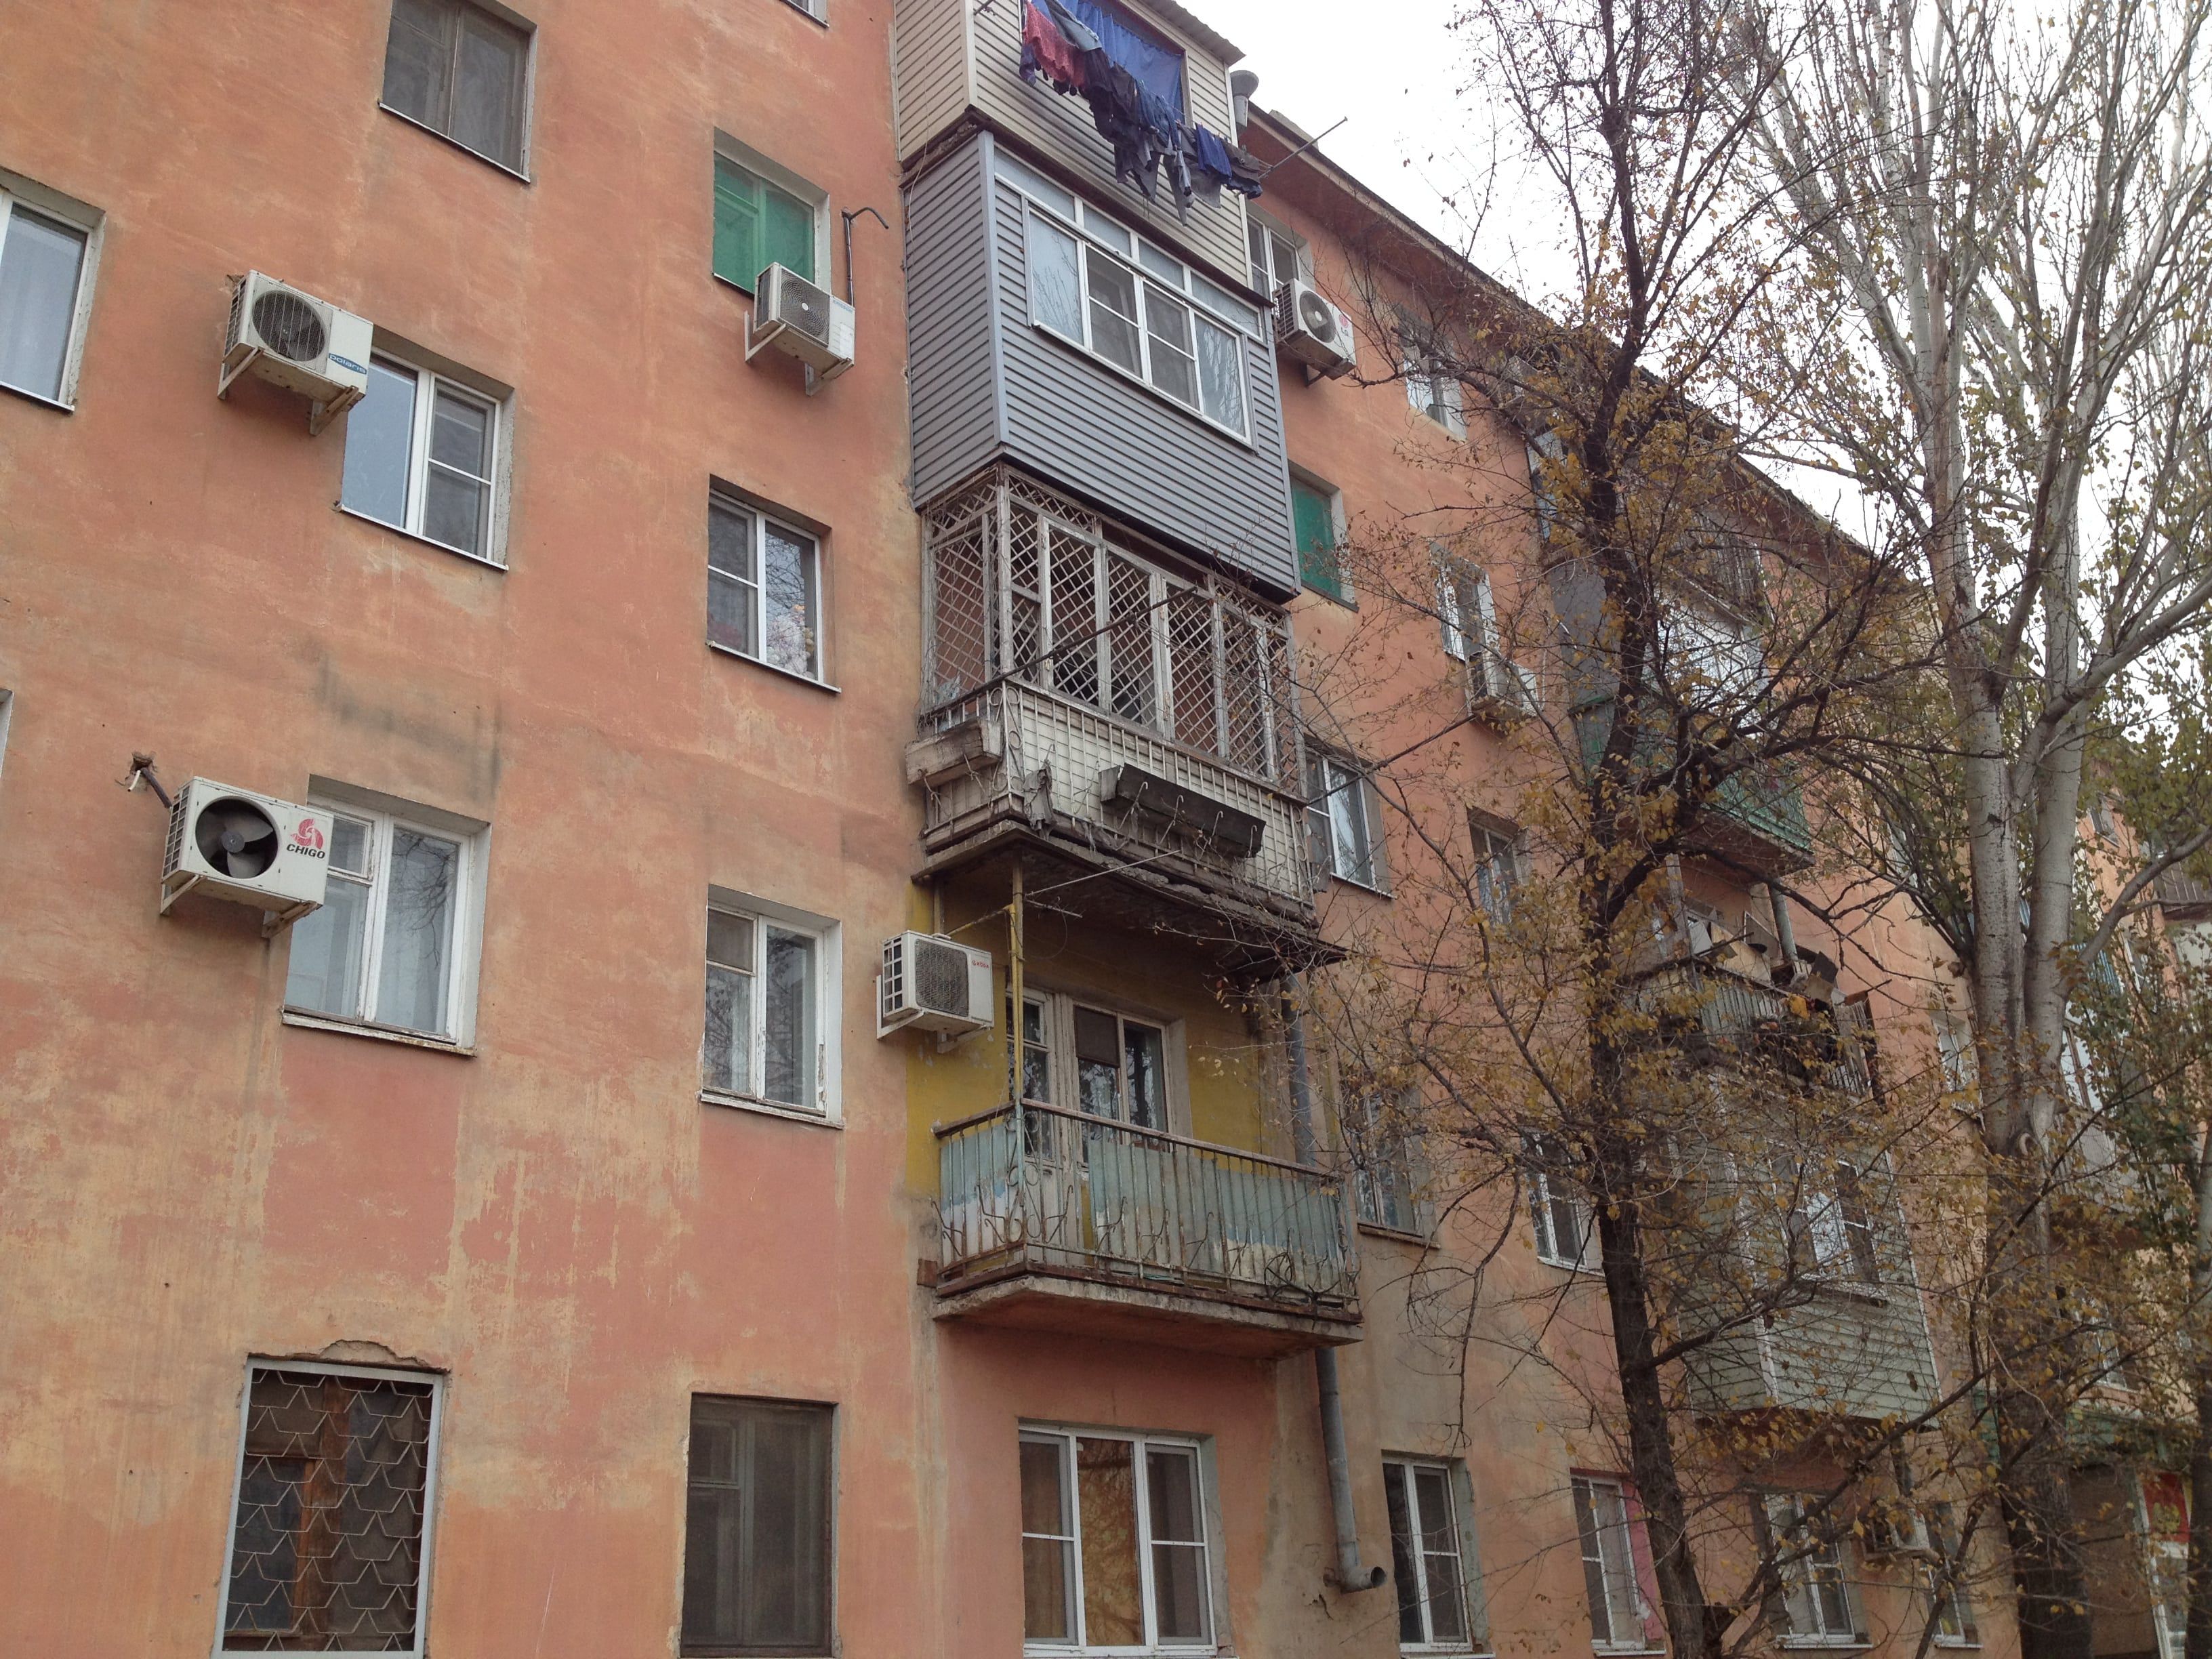 Дом на улице Яблочкова в Астрахани, где 17 ноября обрушился балкон. Фото Алены Садовской для "Кавказского узла"